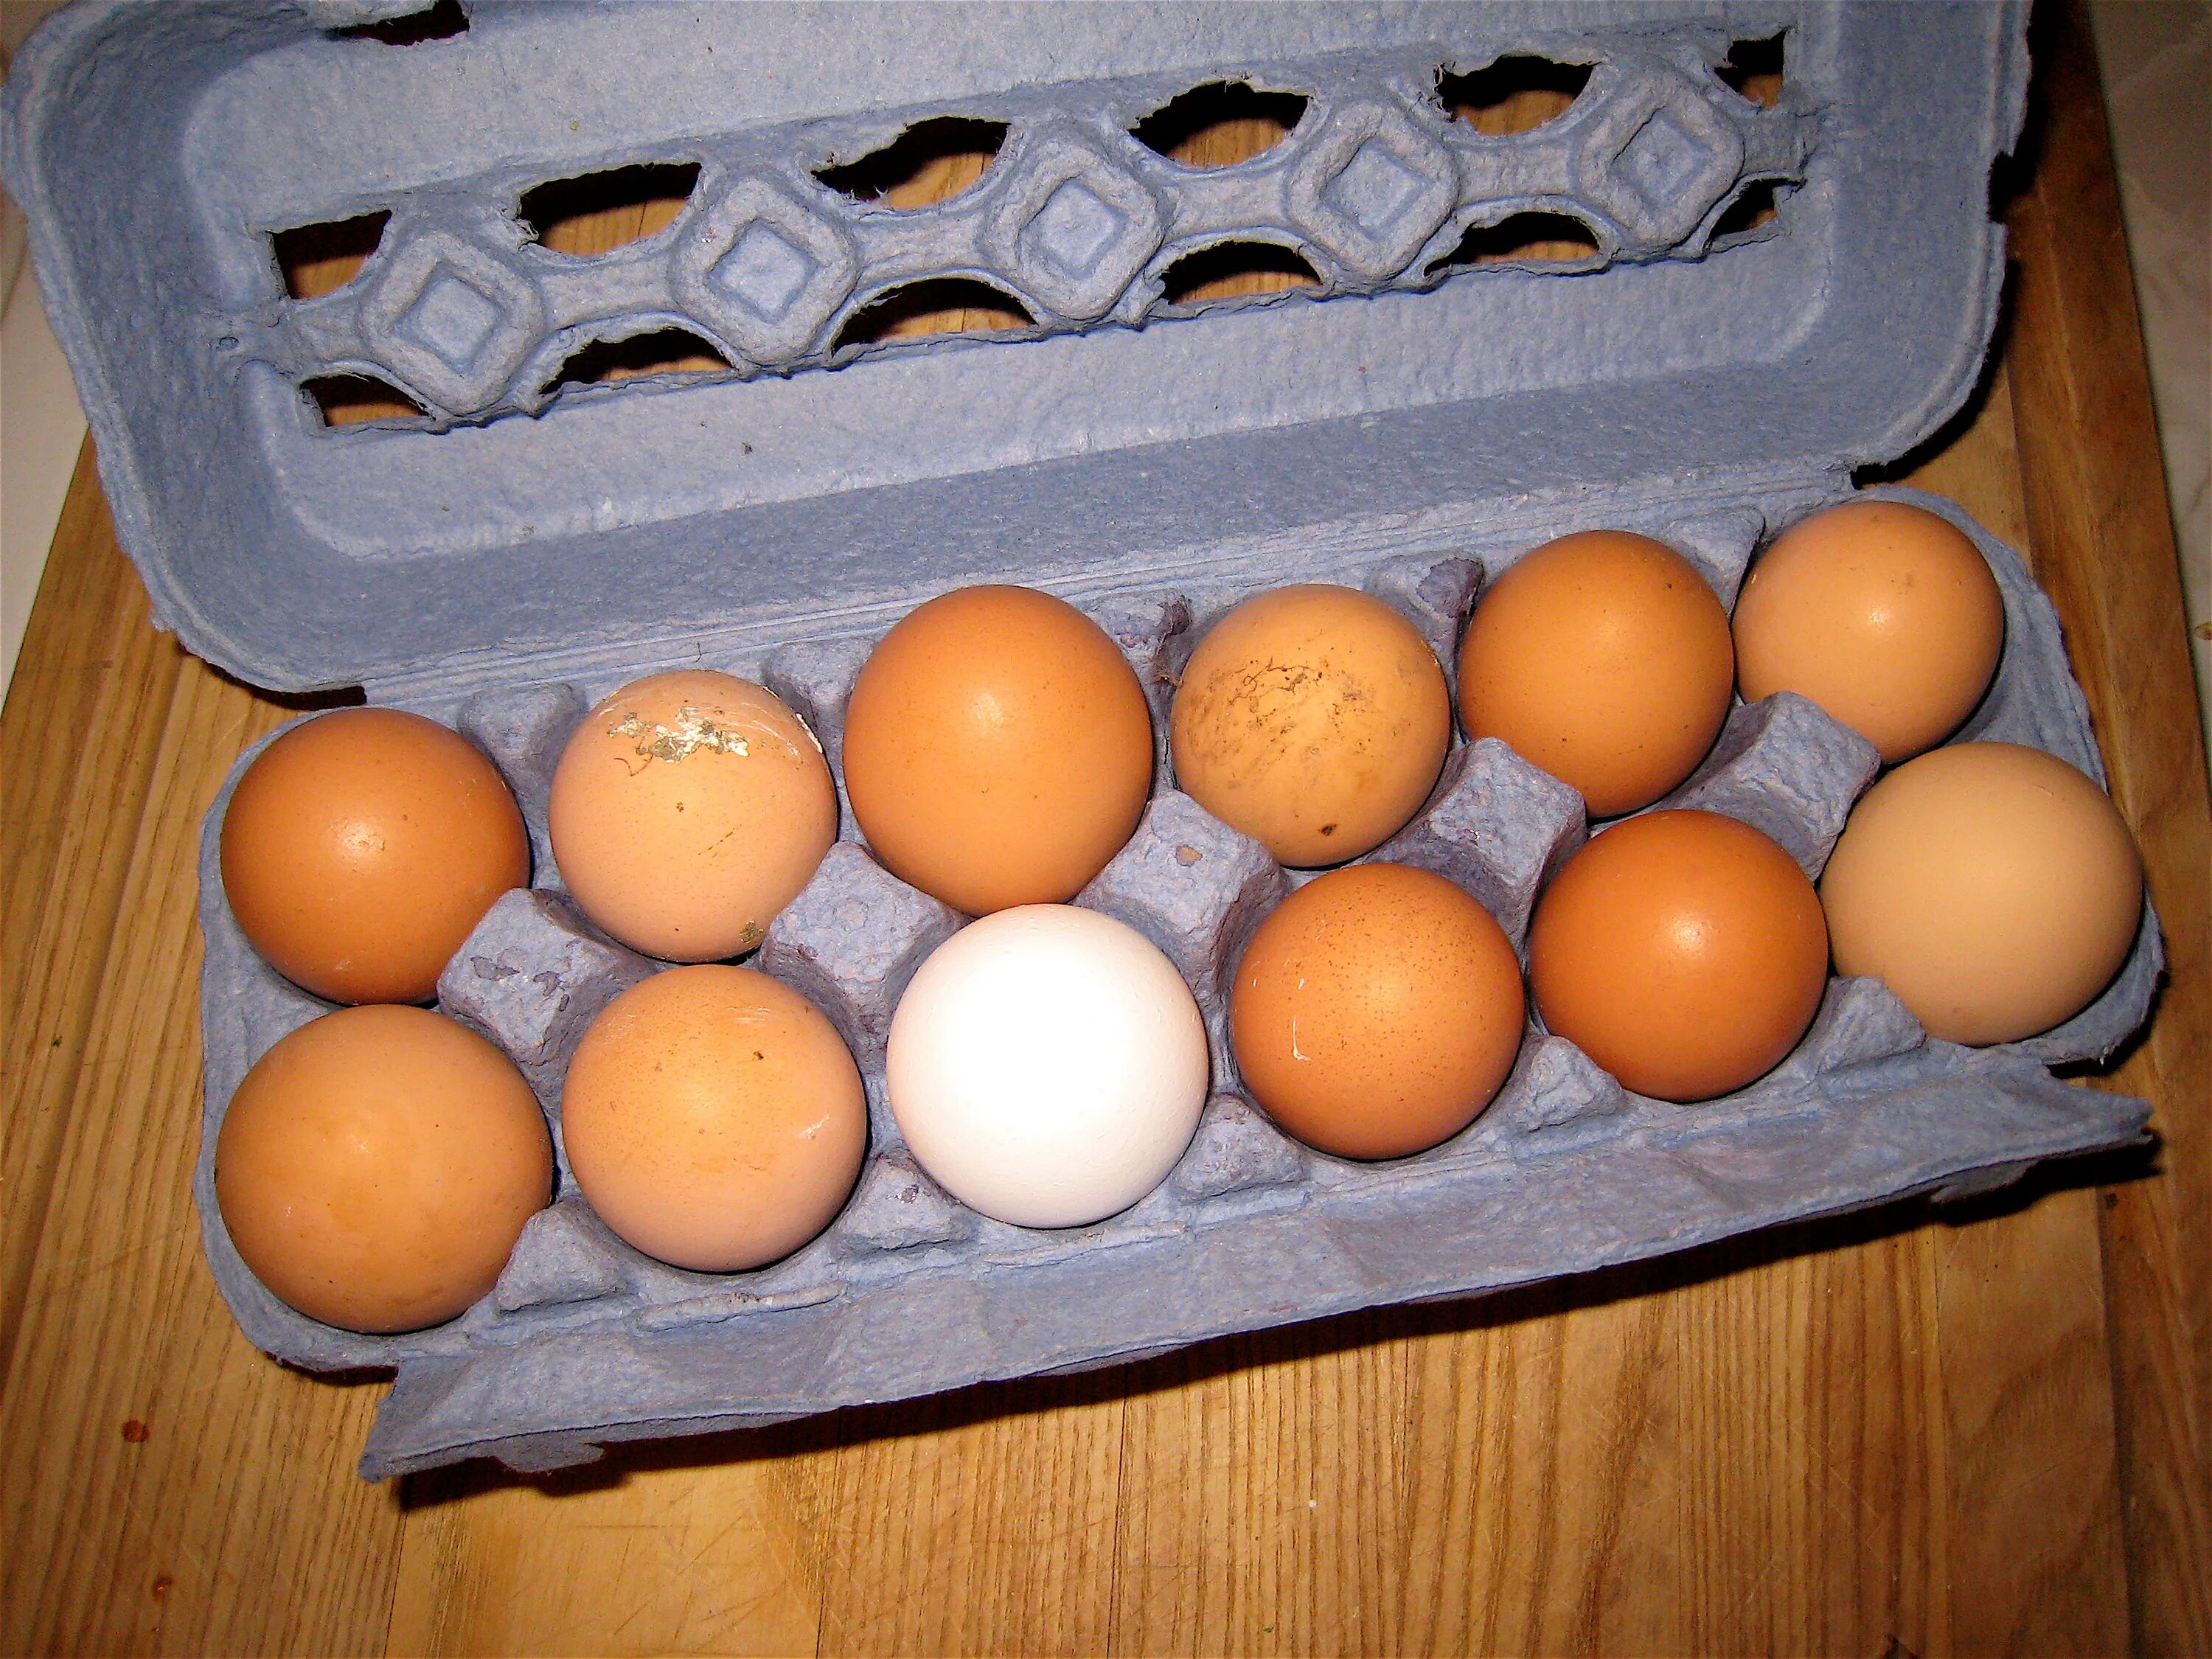 Третье яичко. Яйца фото. Десяток яиц. Дюжина яиц. Декоративная выкладка яиц и яичных продуктов.